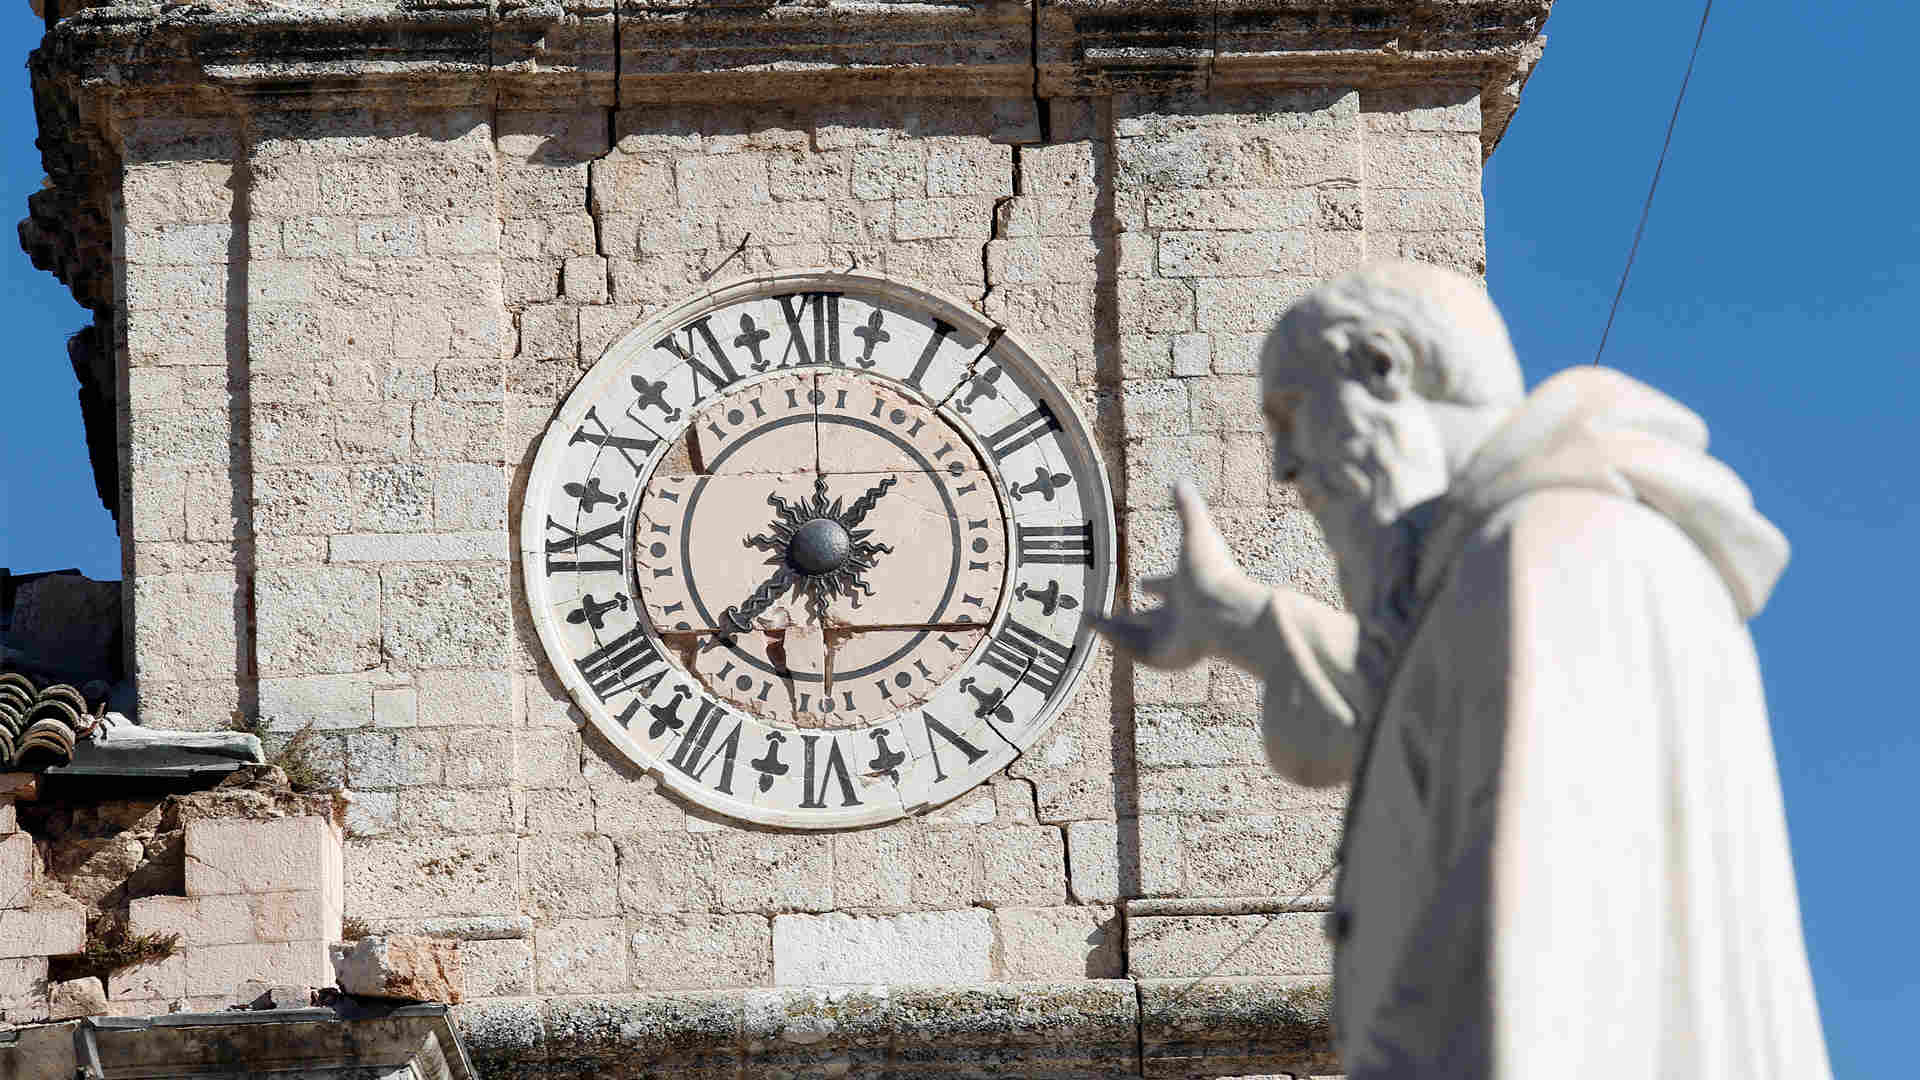 El primer ministro, Matteo Renzi, se preocupará de que no haya “ladrones” en la reparación de los daños causados por el terremoto